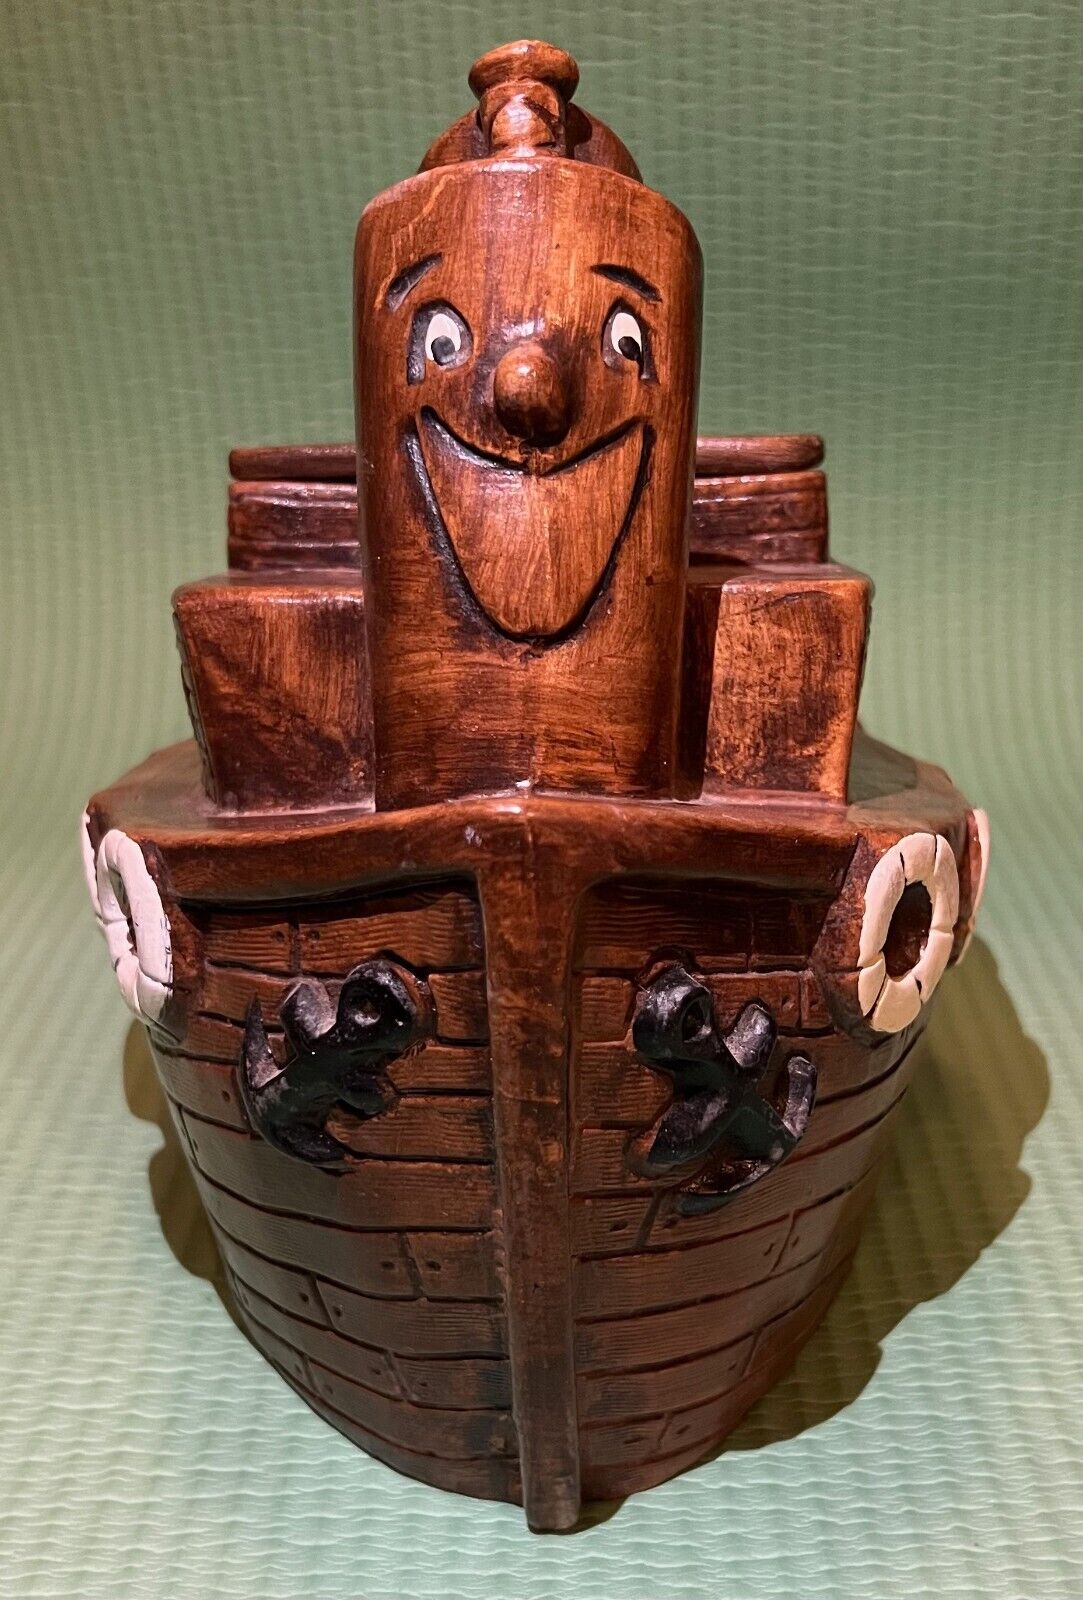 Vintage Toot Toot Tugboat Ceramic Cookie Jar by Treasure Craft in Rare Brown